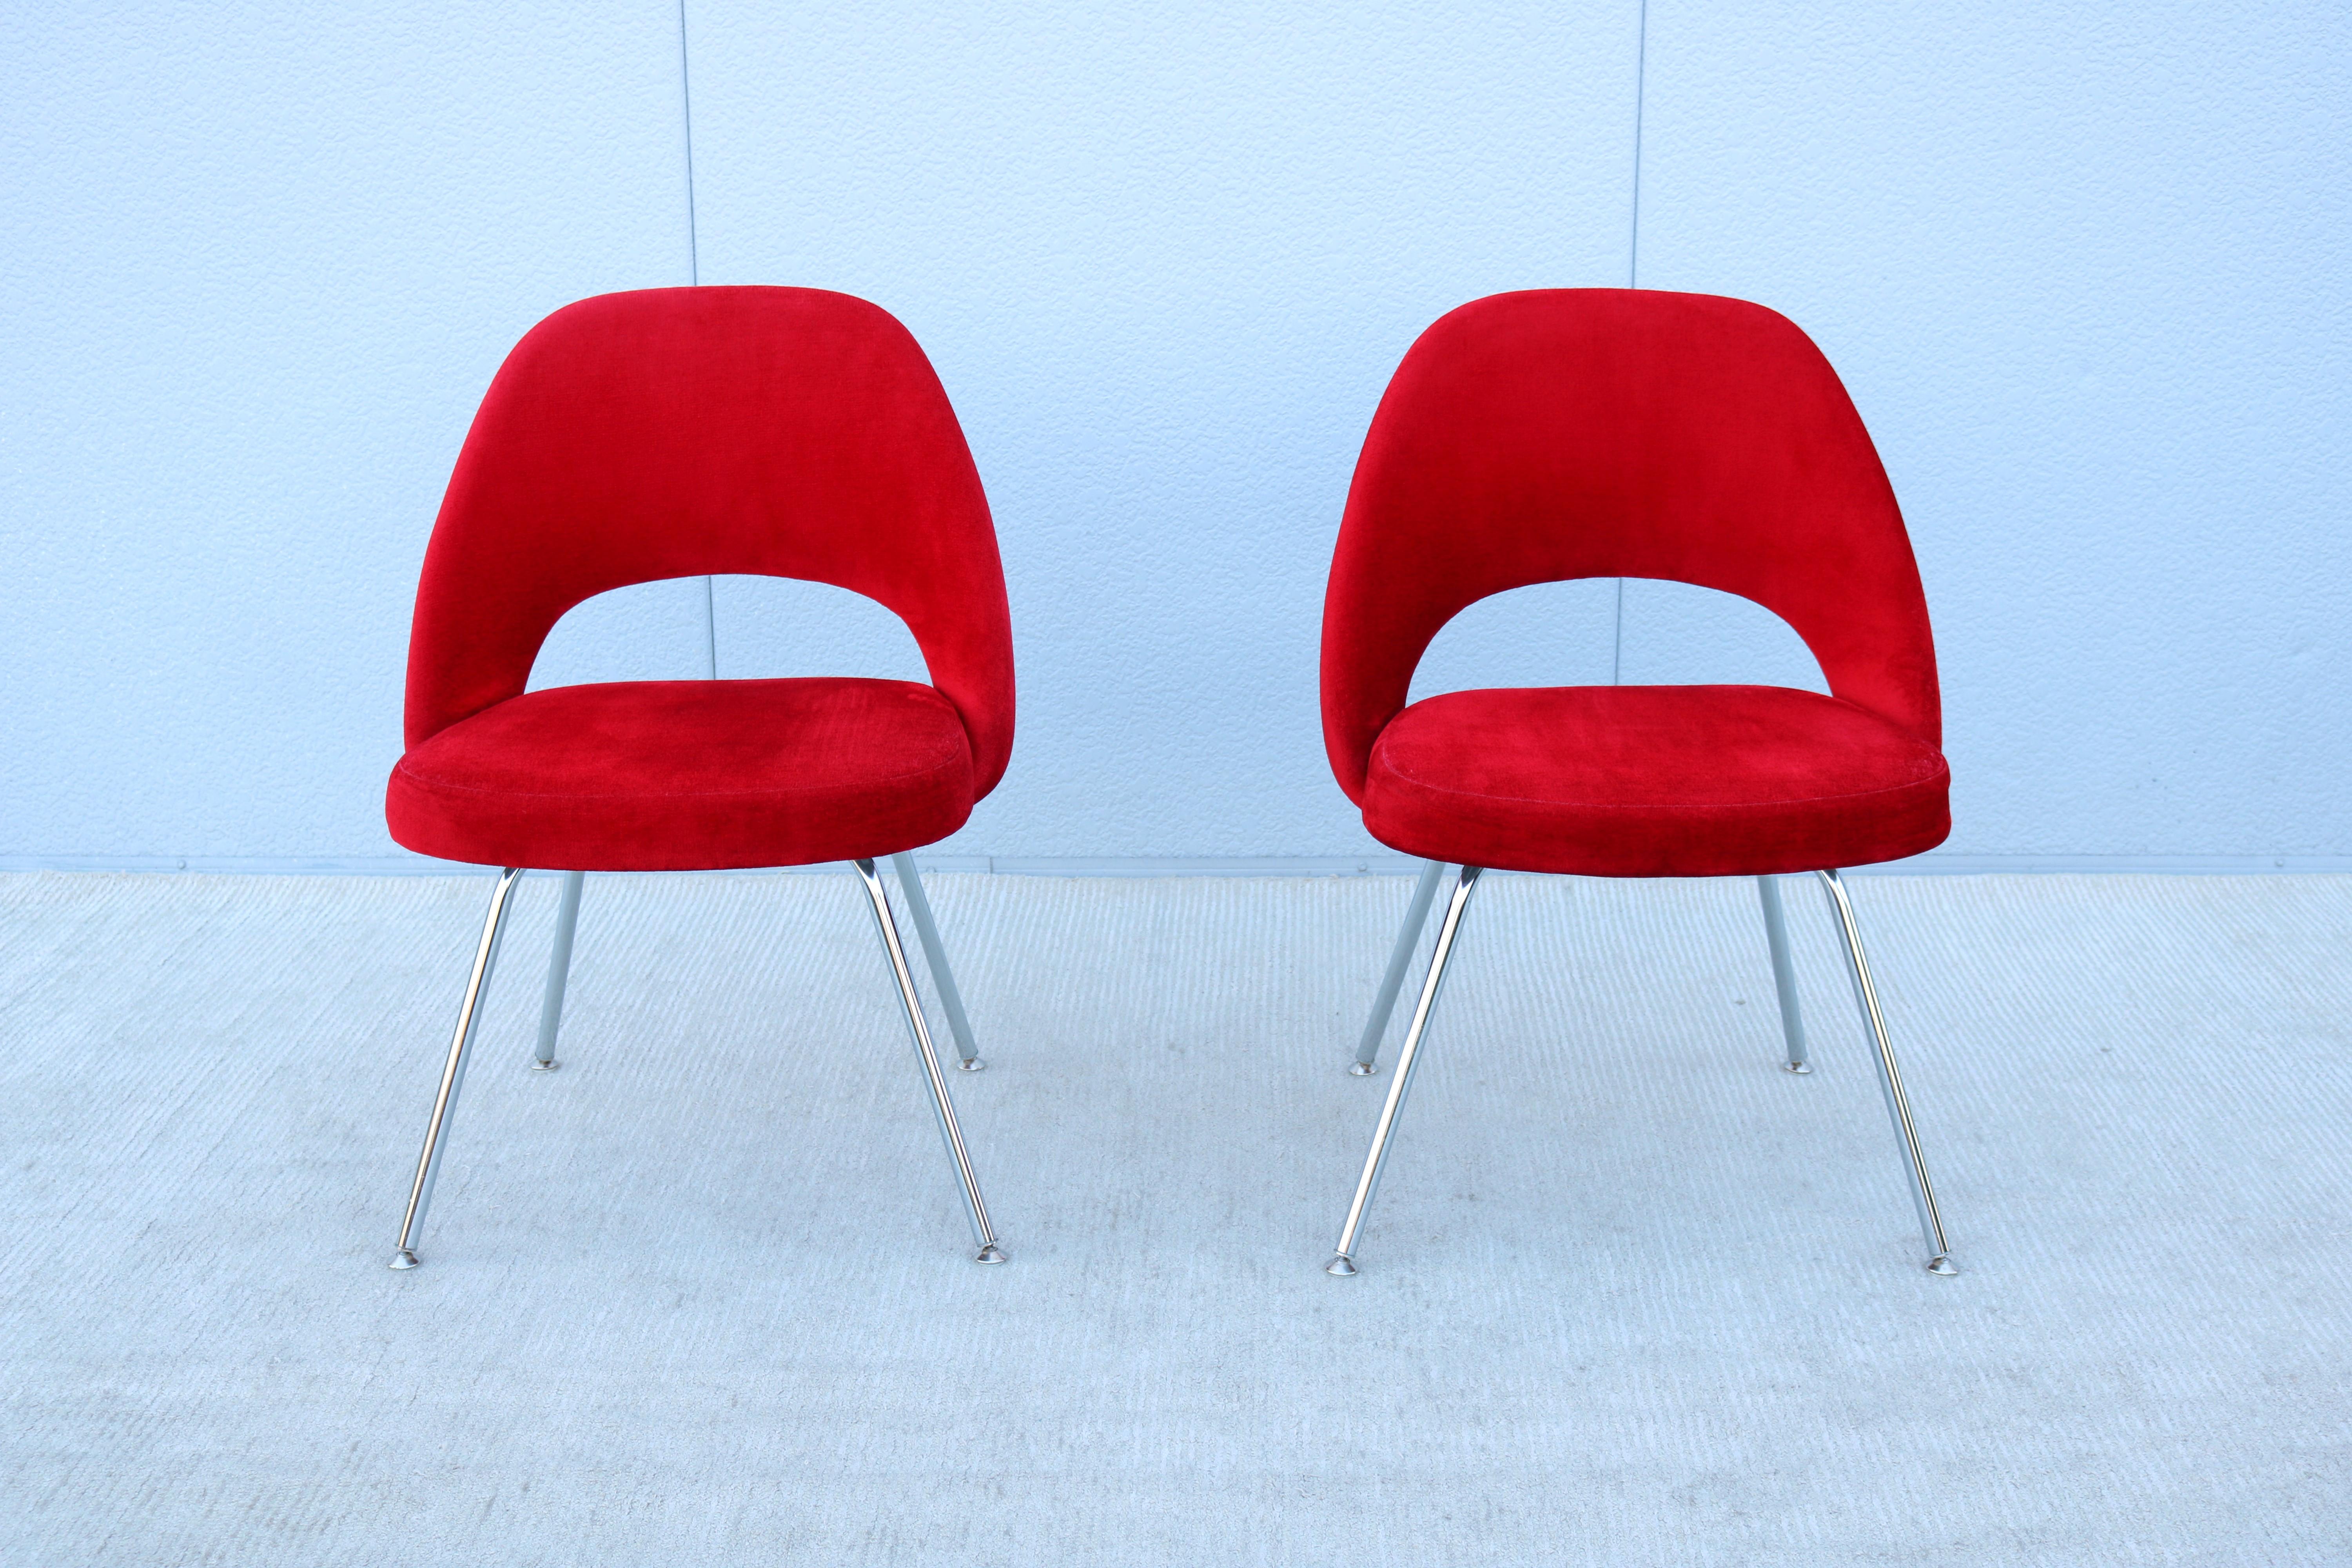 Atemberaubende authentische Mitte des Jahrhunderts moderne Paar Saarinen Executive armless Stühle von Knoll.
Einer der beliebtesten Entwürfe von Knoll, der durch die Form seiner Schale höchsten Komfort bietet.
Er wurde 1950 eingeführt und ist ein